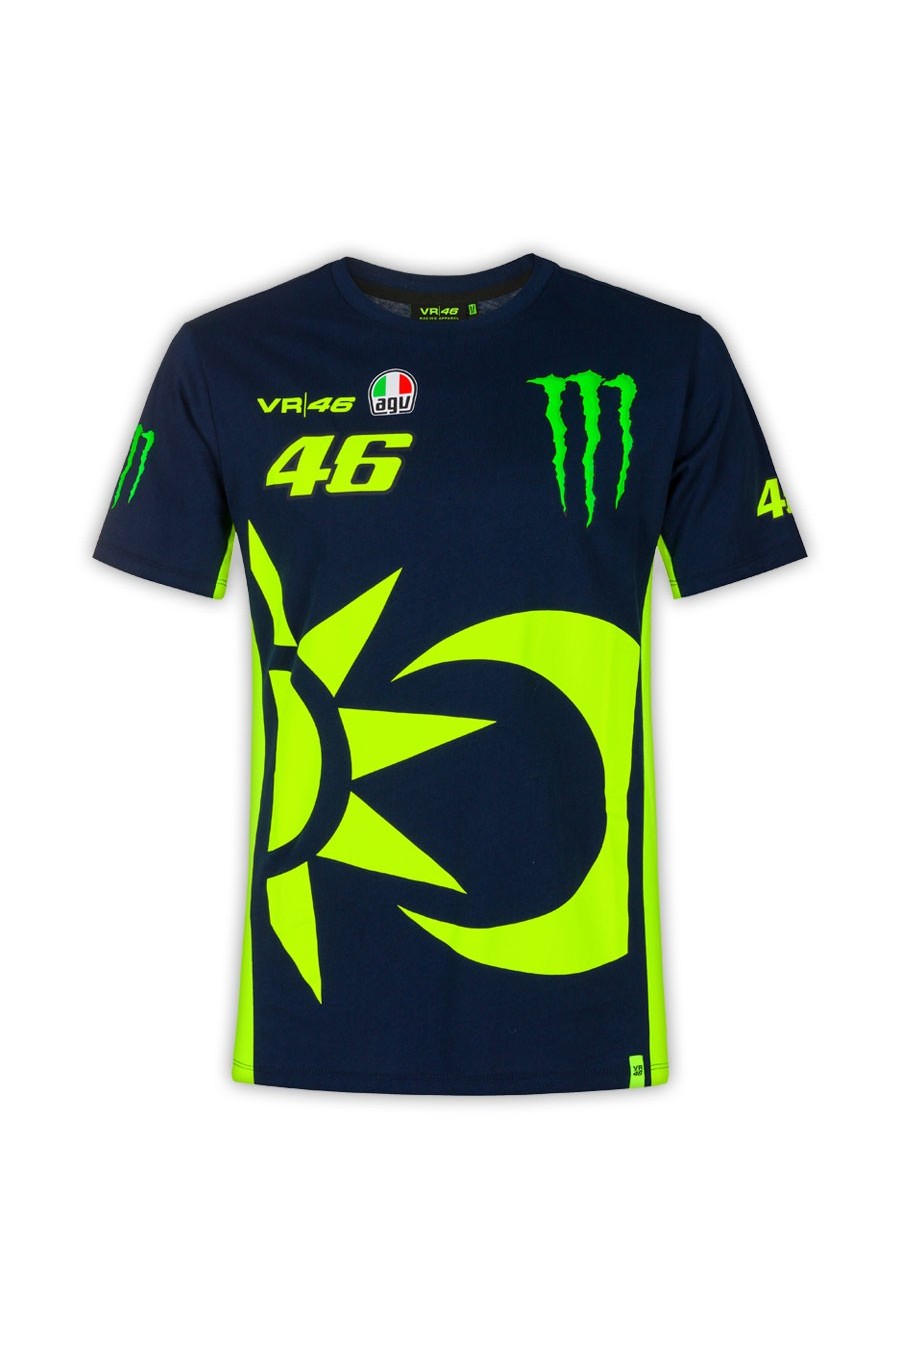 T-shirt Replica Valentino Rossi 46